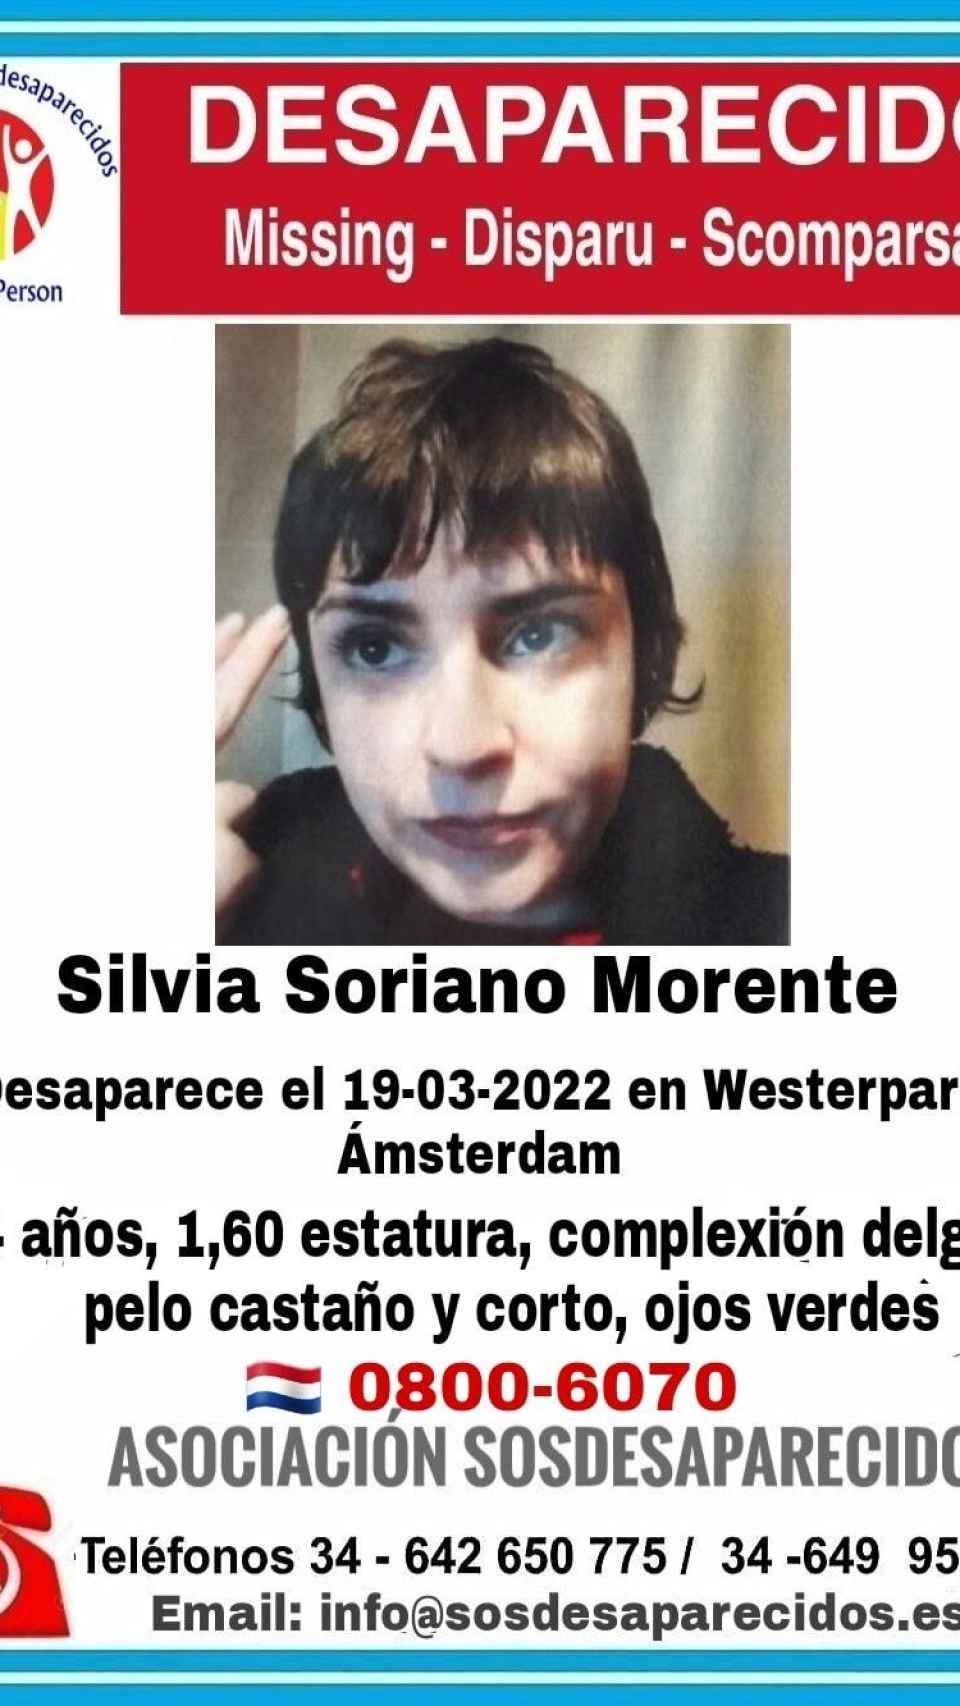 El cartel que difundió SOS Desaparecidos para pedir ayuda en la búsqueda de Silvia Soriano Morente.